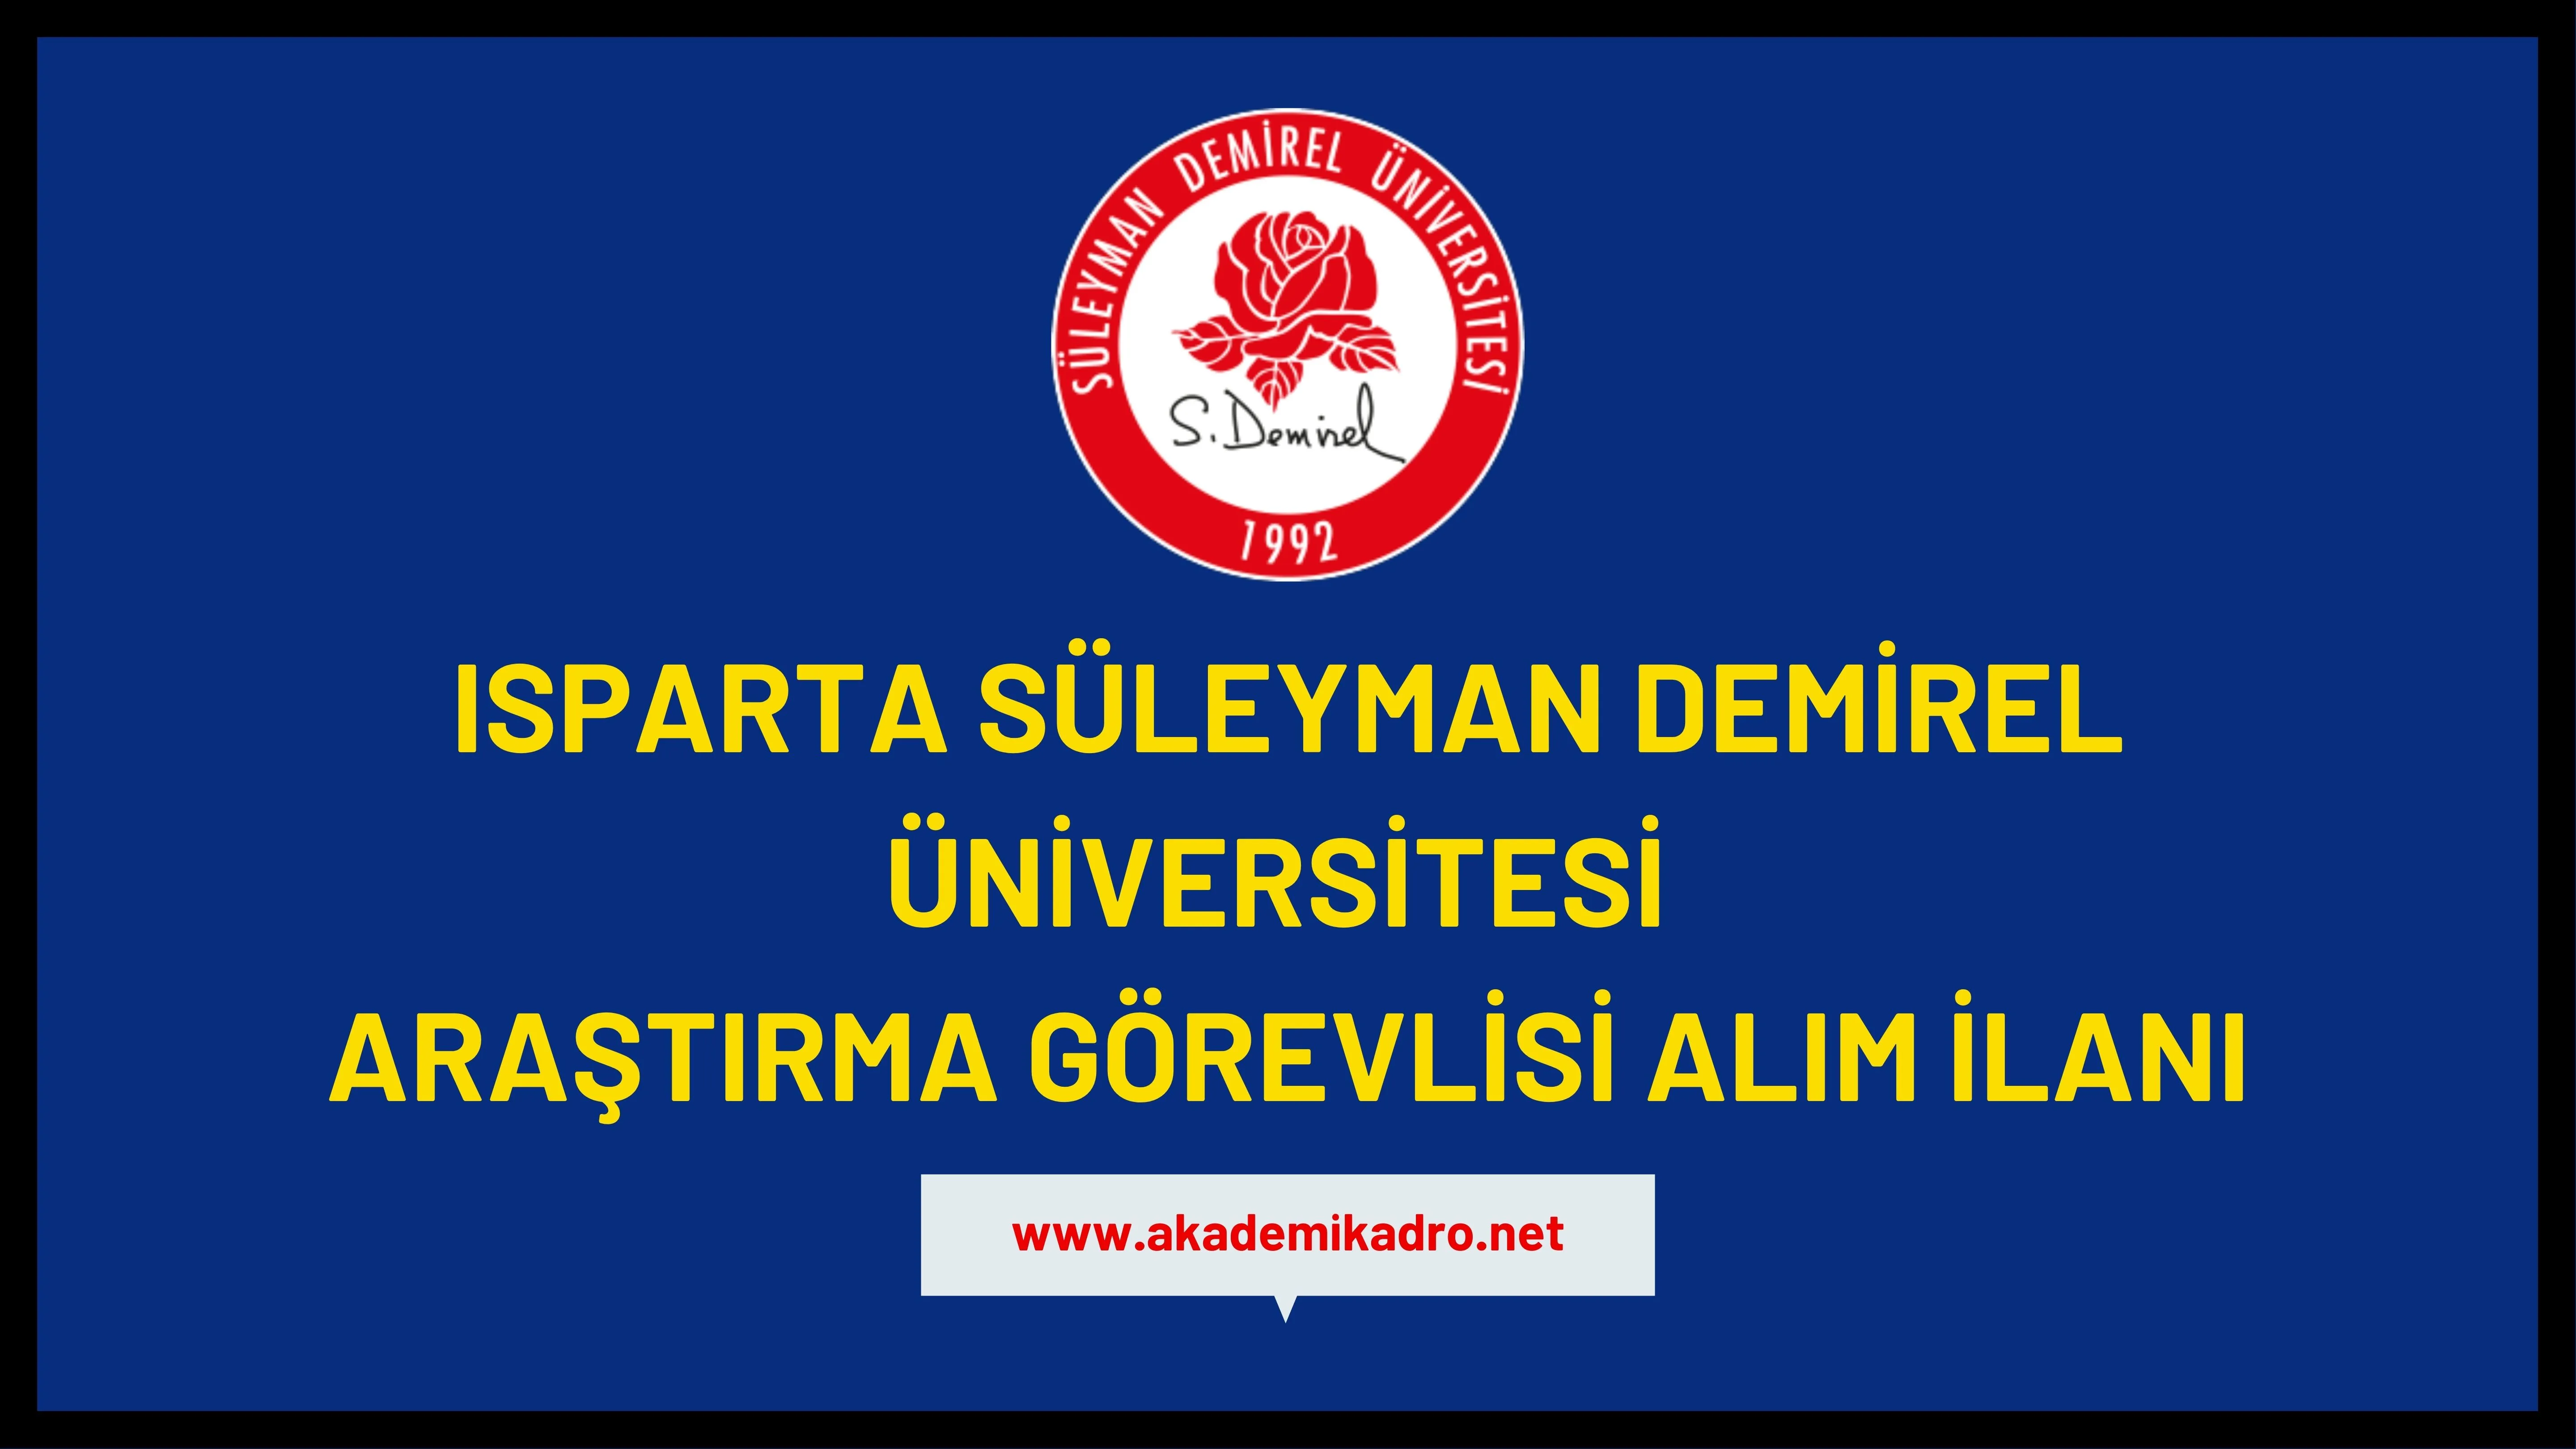 Süleyman Demirel Üniversitesi 7 Araştırma görevlisi ve 12 Öğretim üyesi olmak üzere 19 Öğretim elemanı alacak.